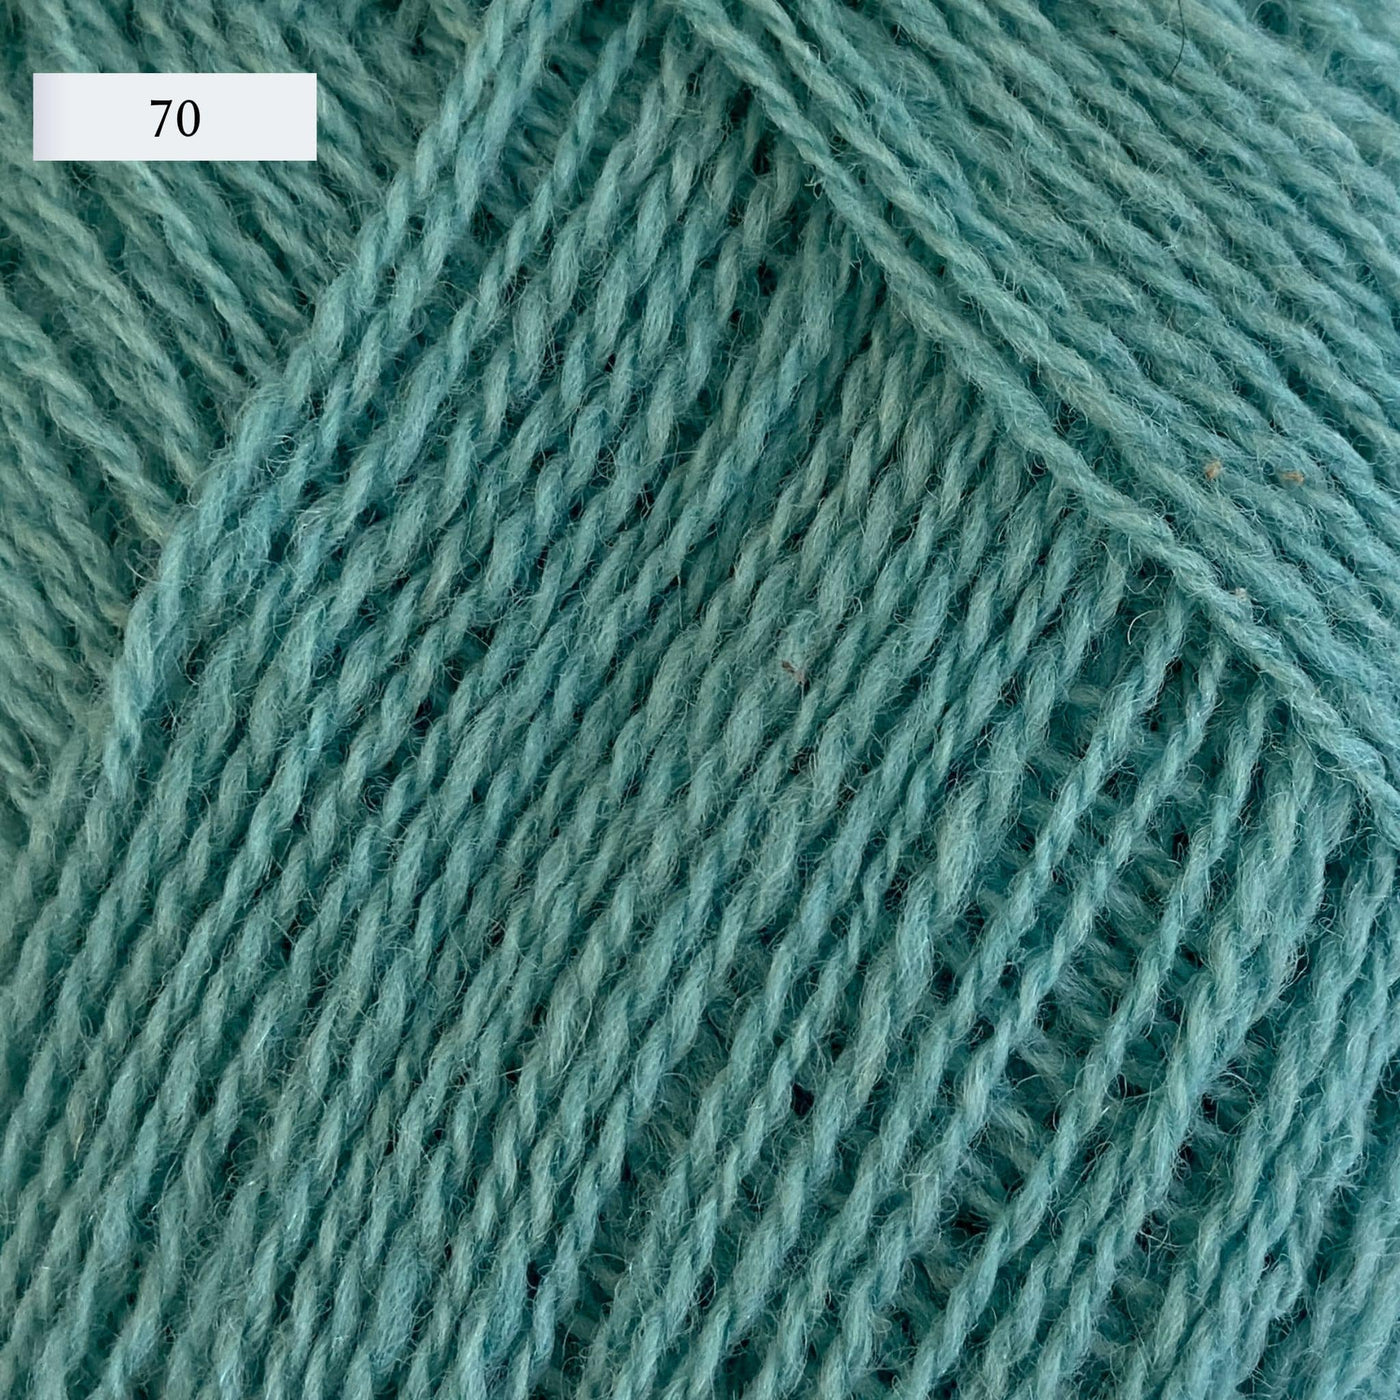 Rauma Lamullgarn, a fingering weight yarn, in color 70, a seafoam green